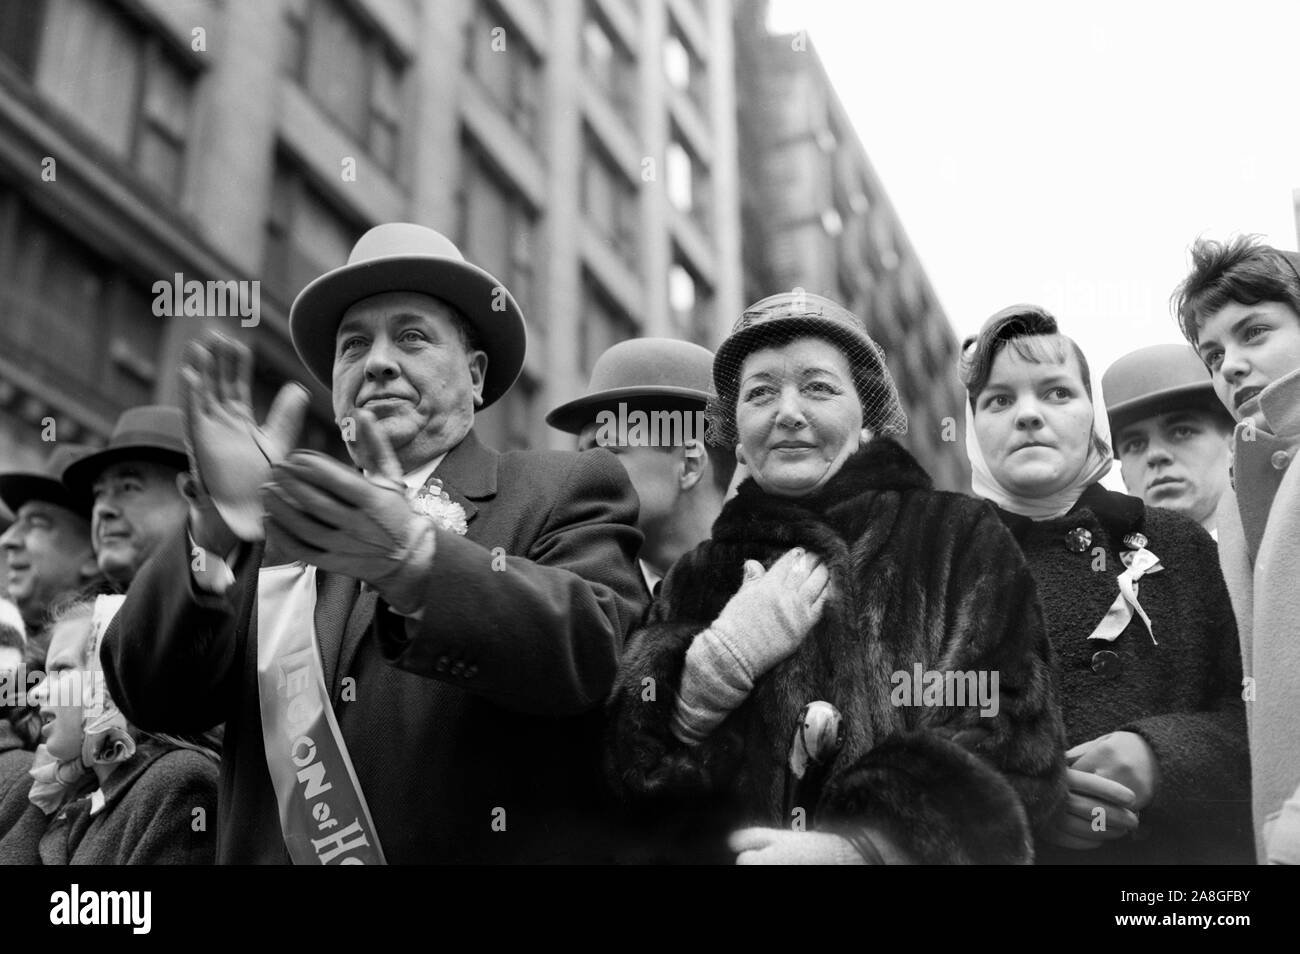 Der Bürgermeister von Chicago Ernest Hemingway und seine Frau Eleanor führen die St. Patrick's Day Parade durch die Innenstadt von Chicago, 1962 Ca. Einer ihrer Söhne, künftiger Bürgermeister Richard M. Daley, ist im Bild 2. von rechts im Hintergrund. Stockfoto